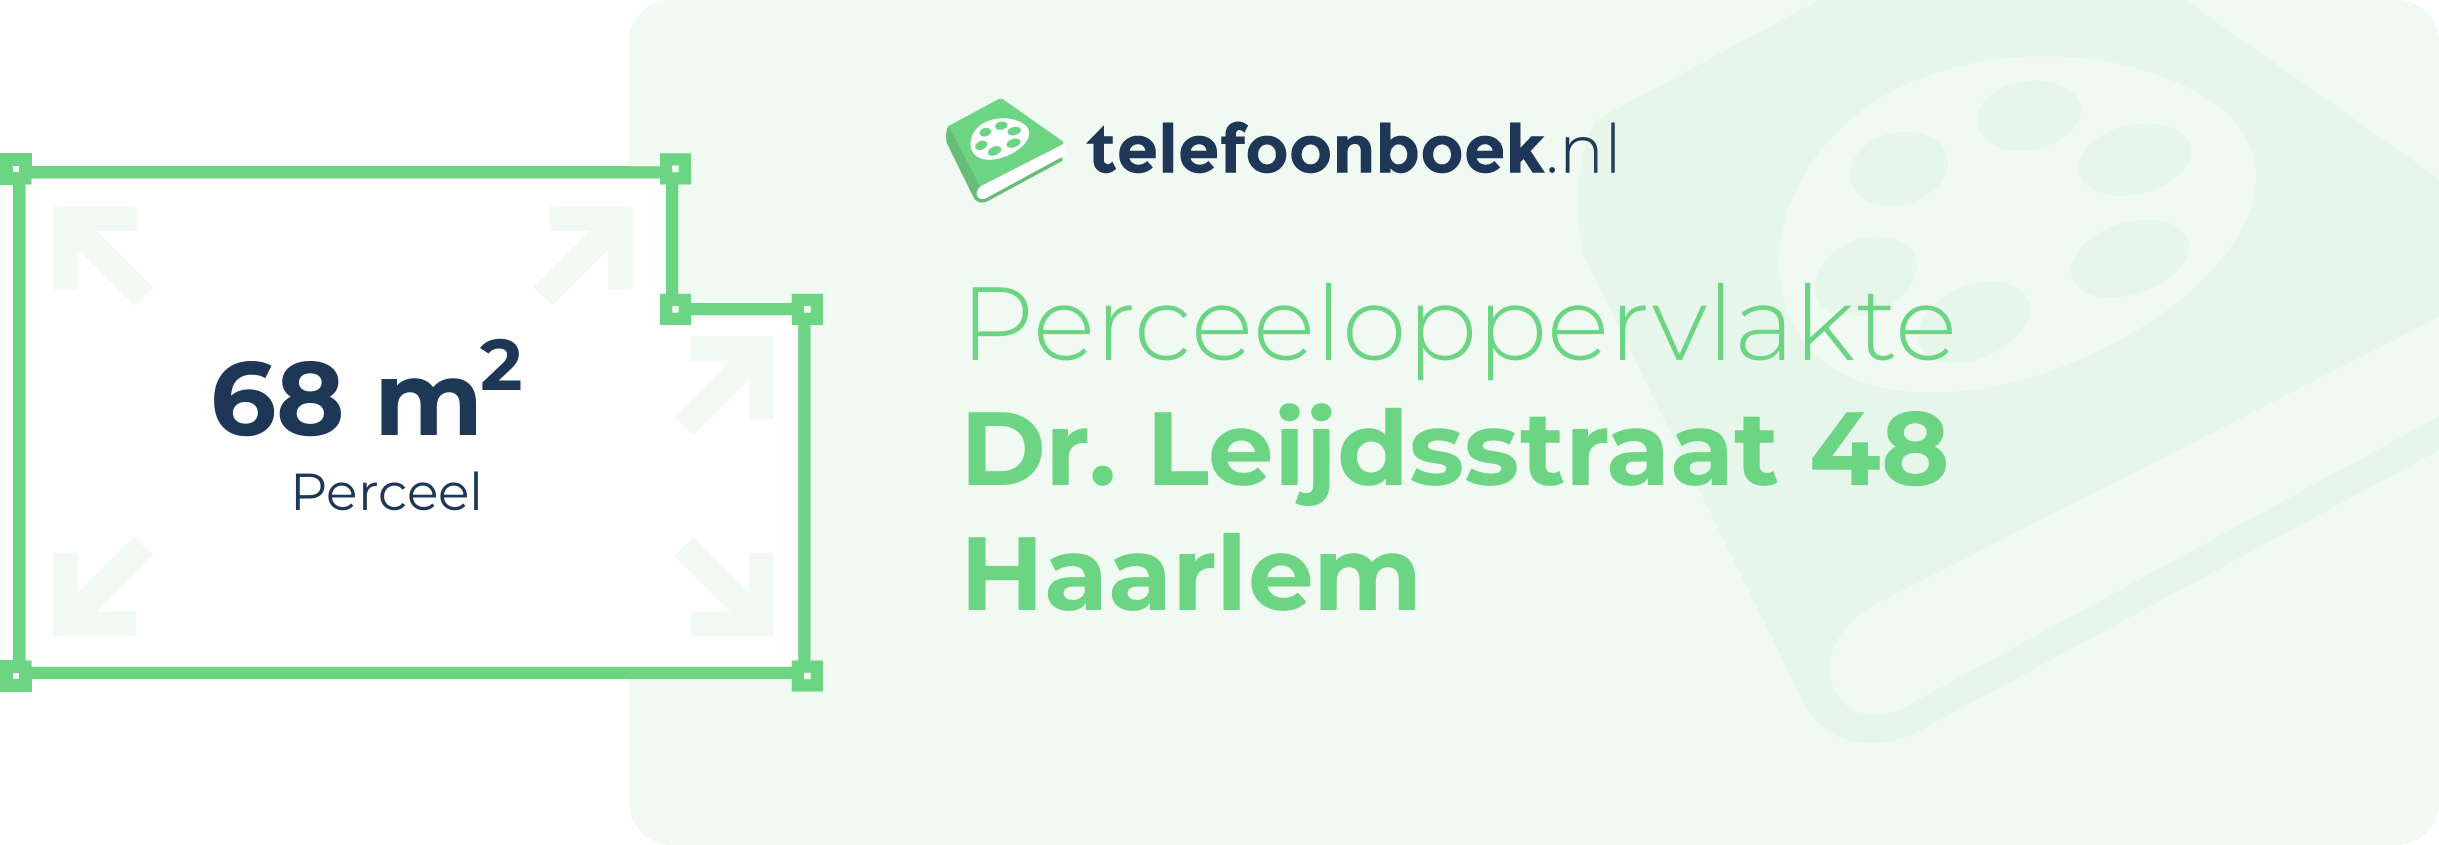 Perceeloppervlakte Dr. Leijdsstraat 48 Haarlem